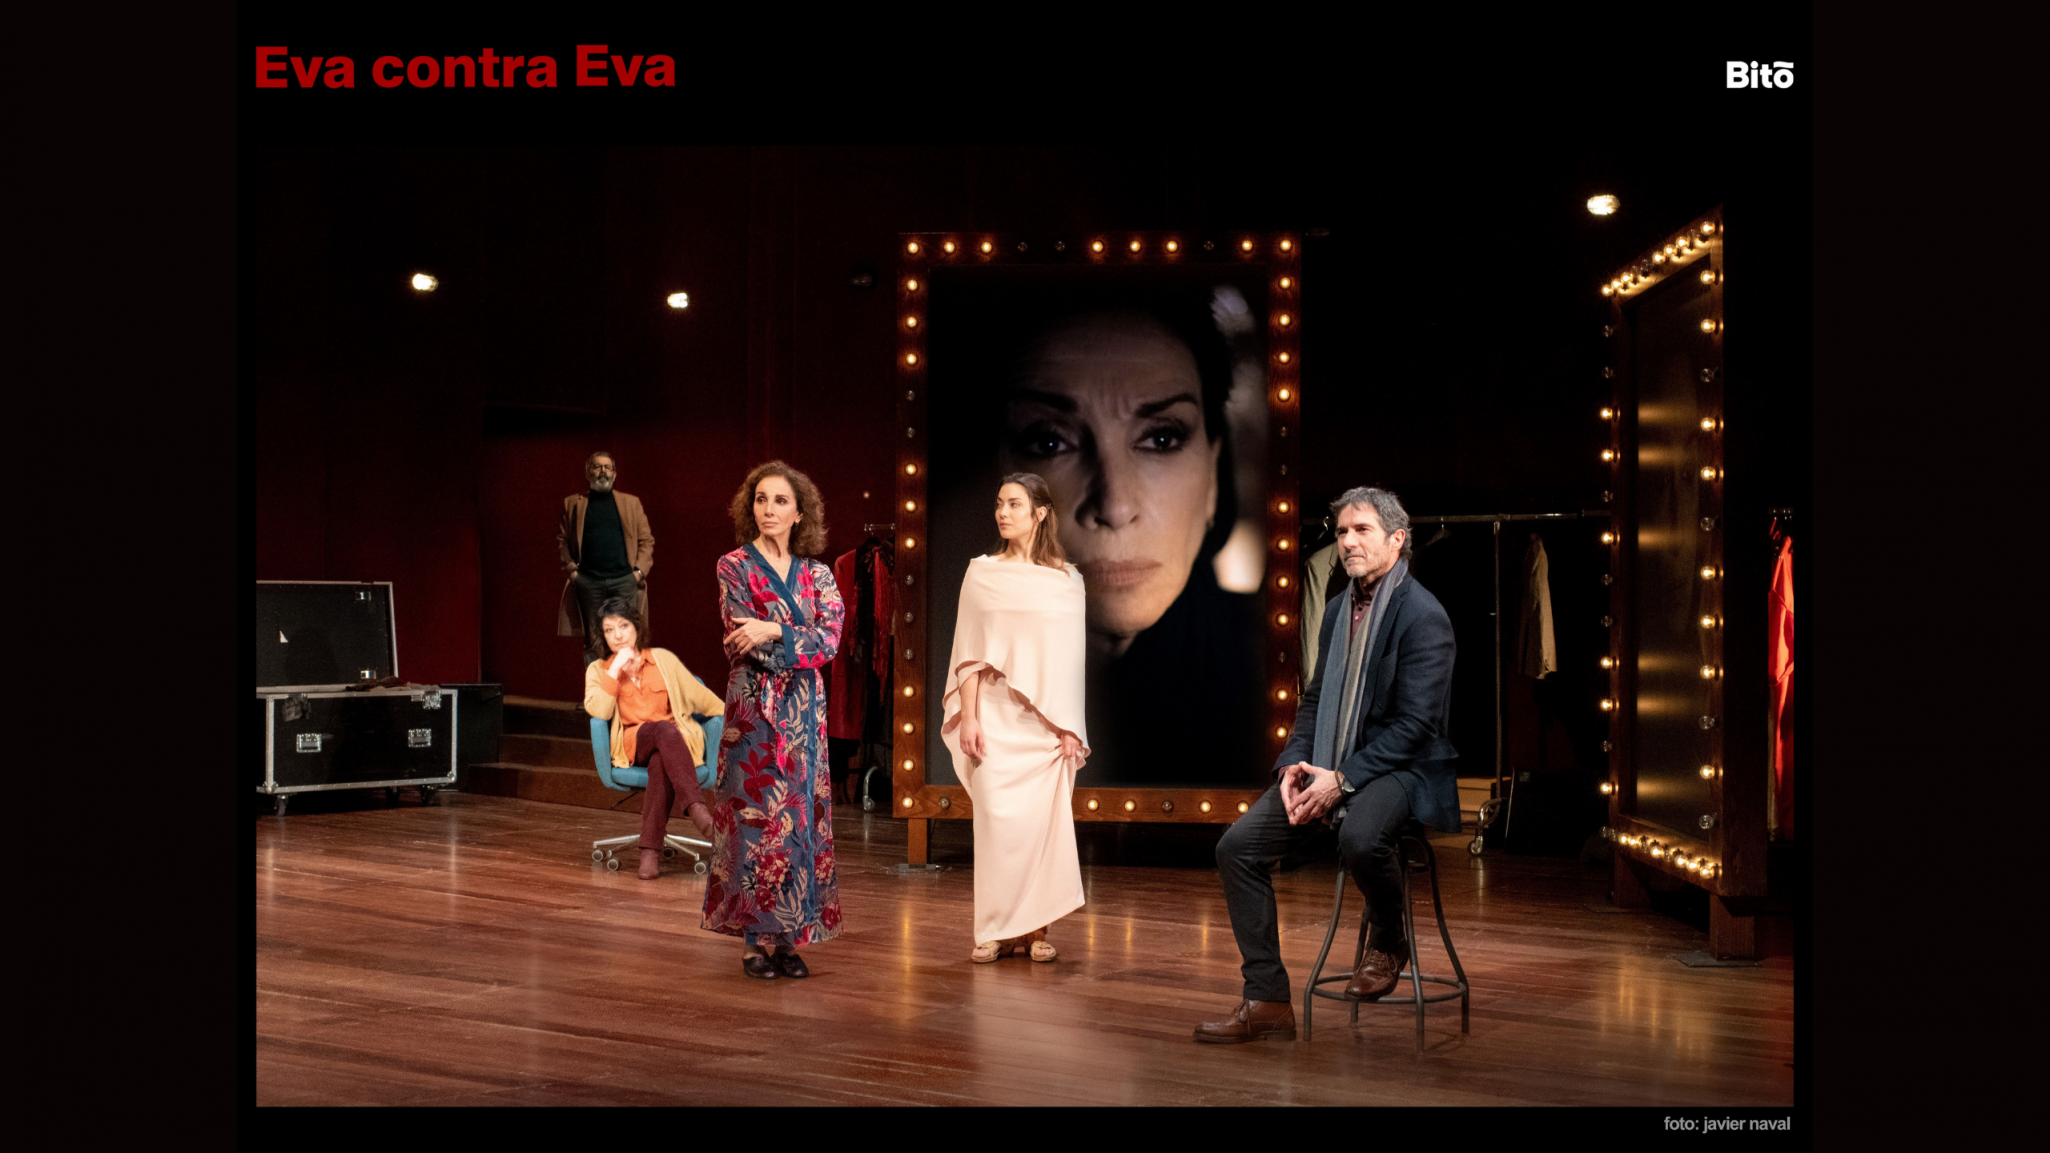 El Teatro Arriaga acoge este fin de semana la obra “Eva contra Eva”, protagonizada por Ana Belén